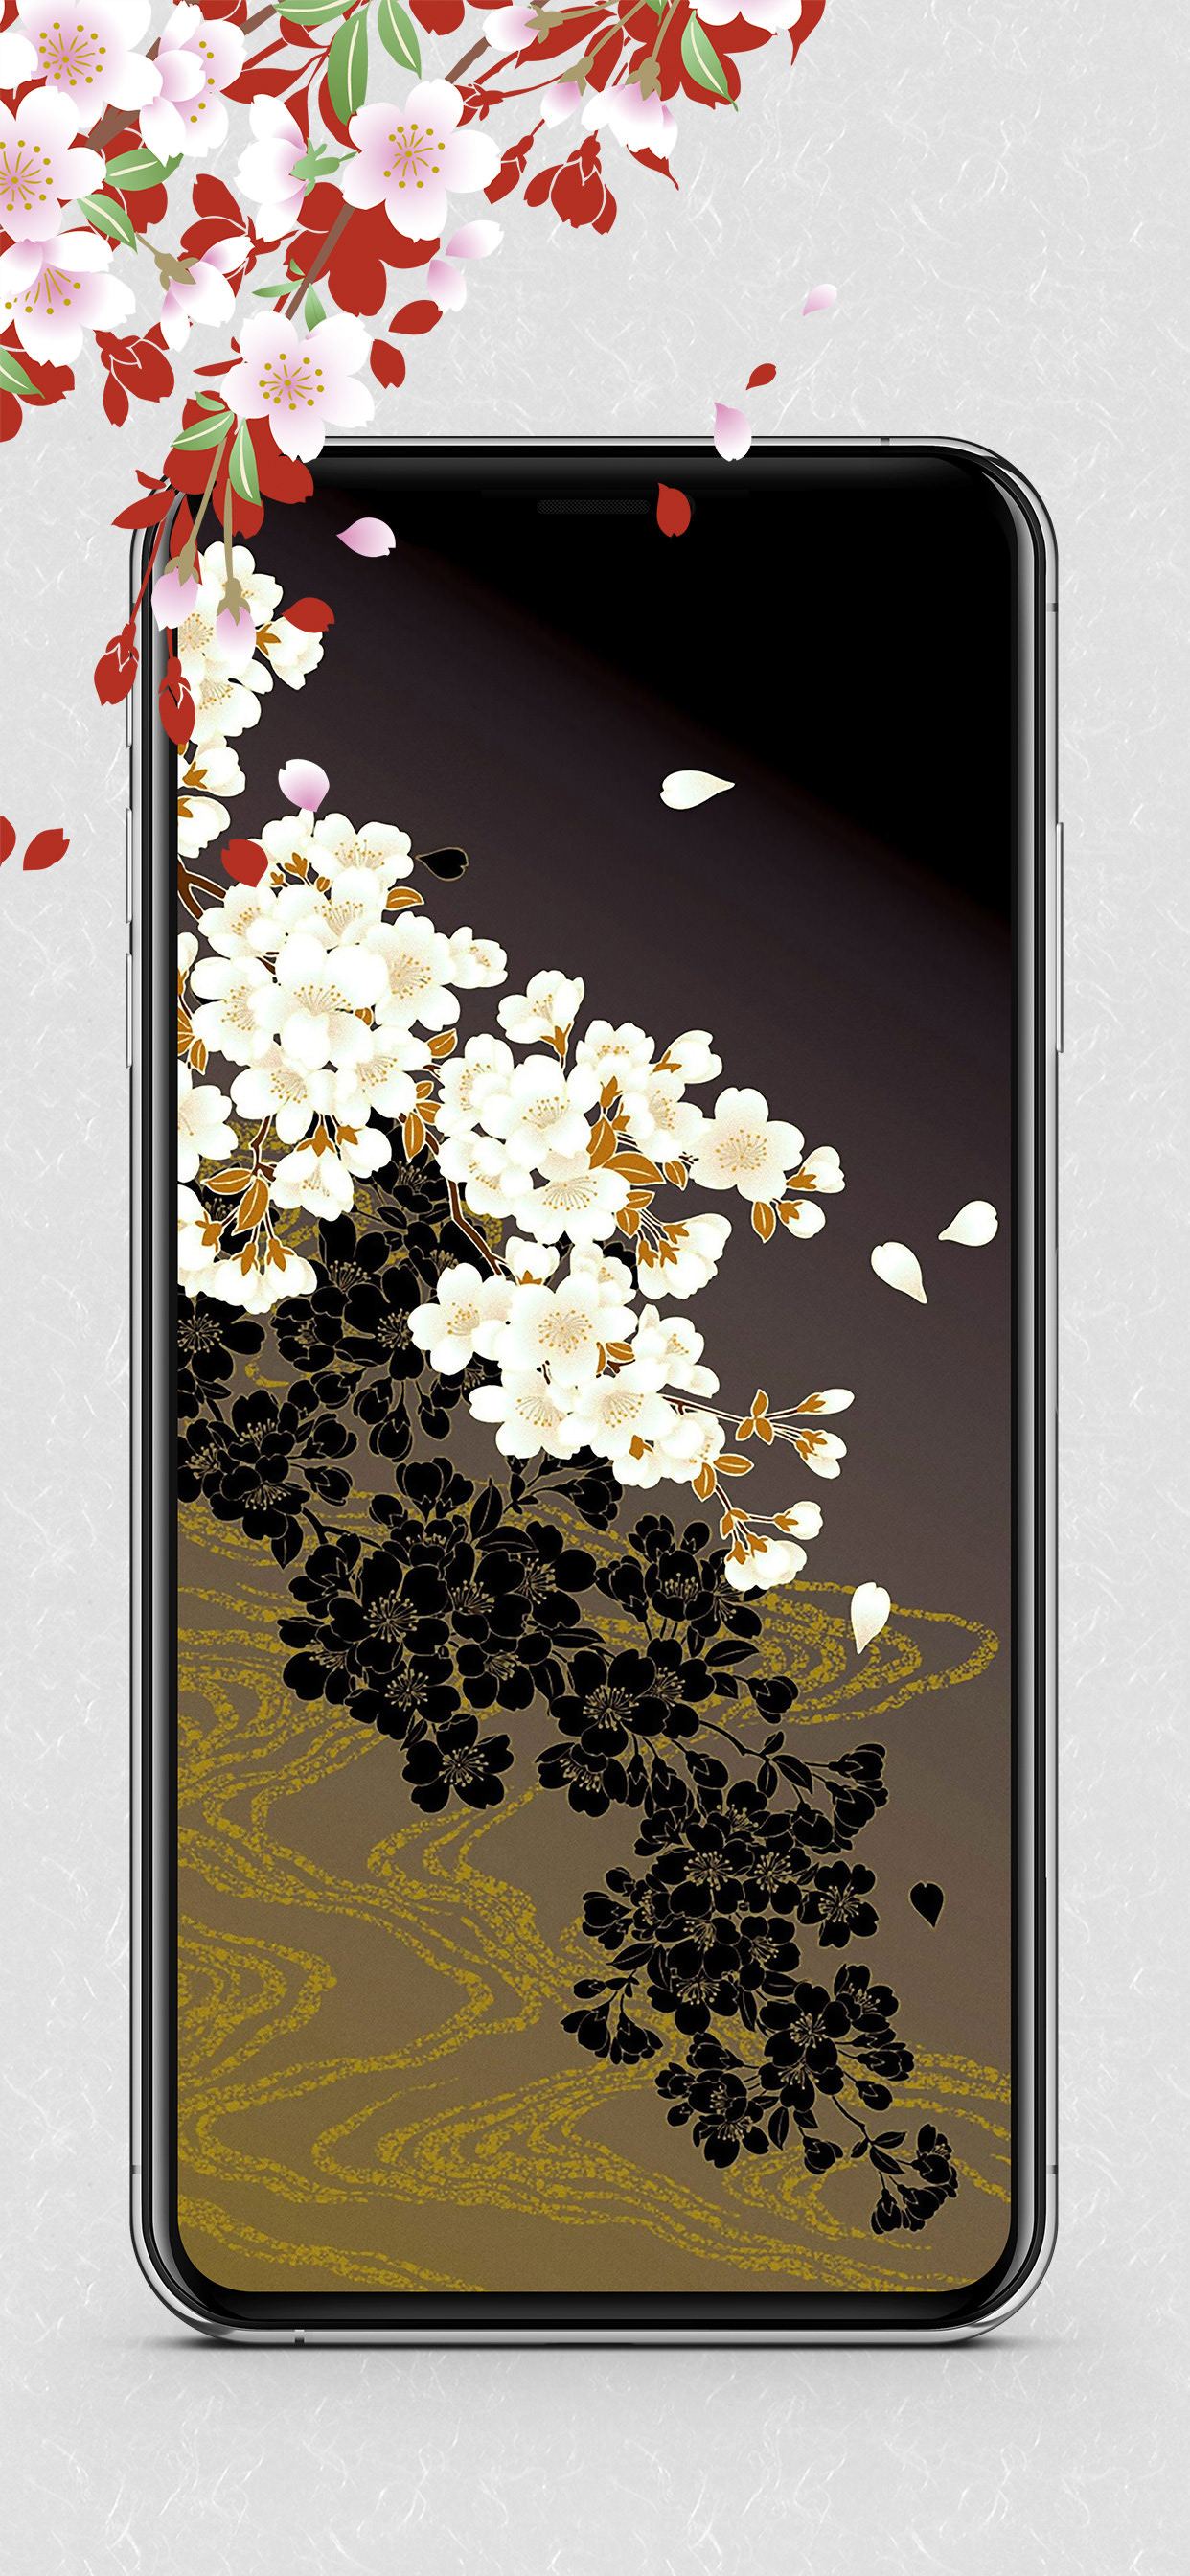 廣川政樹ポートフォリオ Dolice Design Iphone Android App Ukiyo E